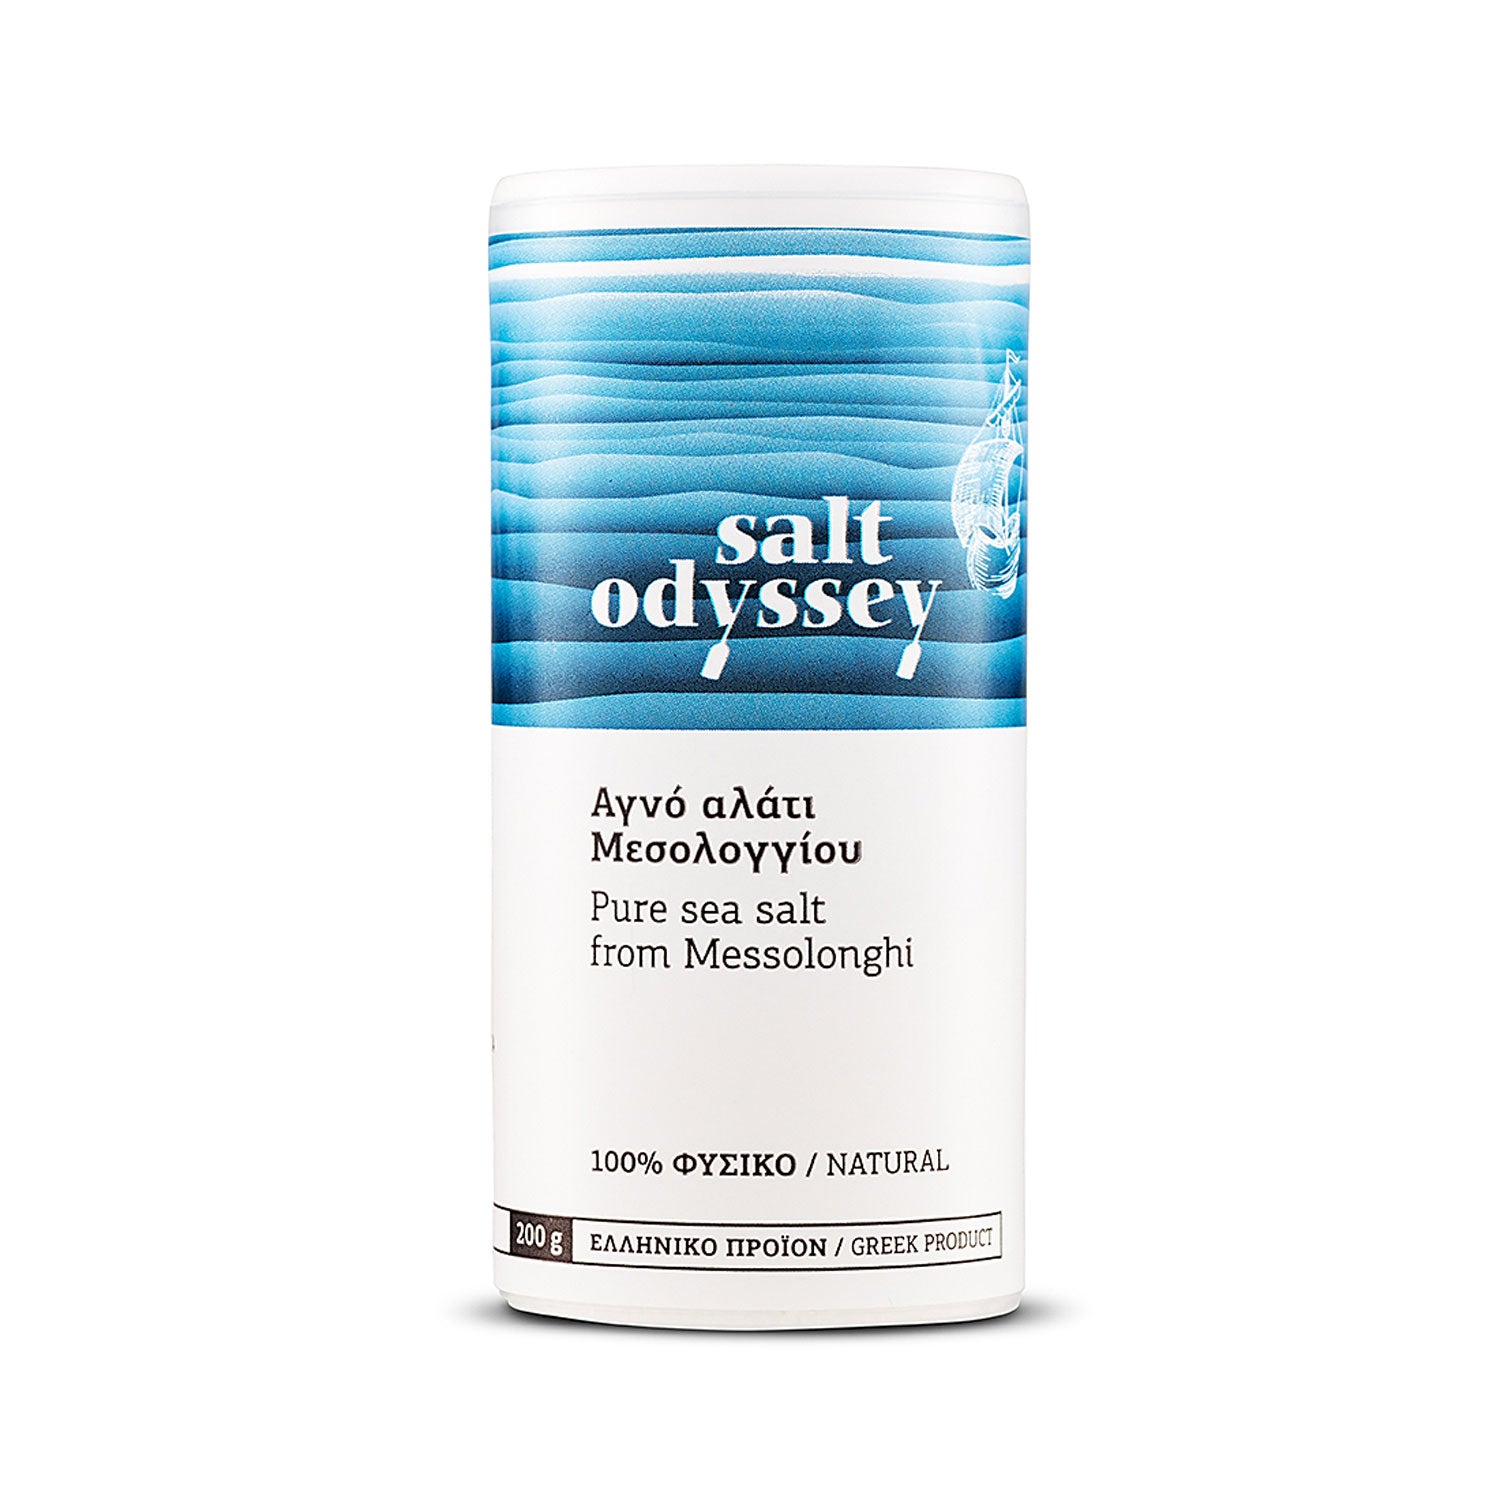 Pure sea salt - 280g